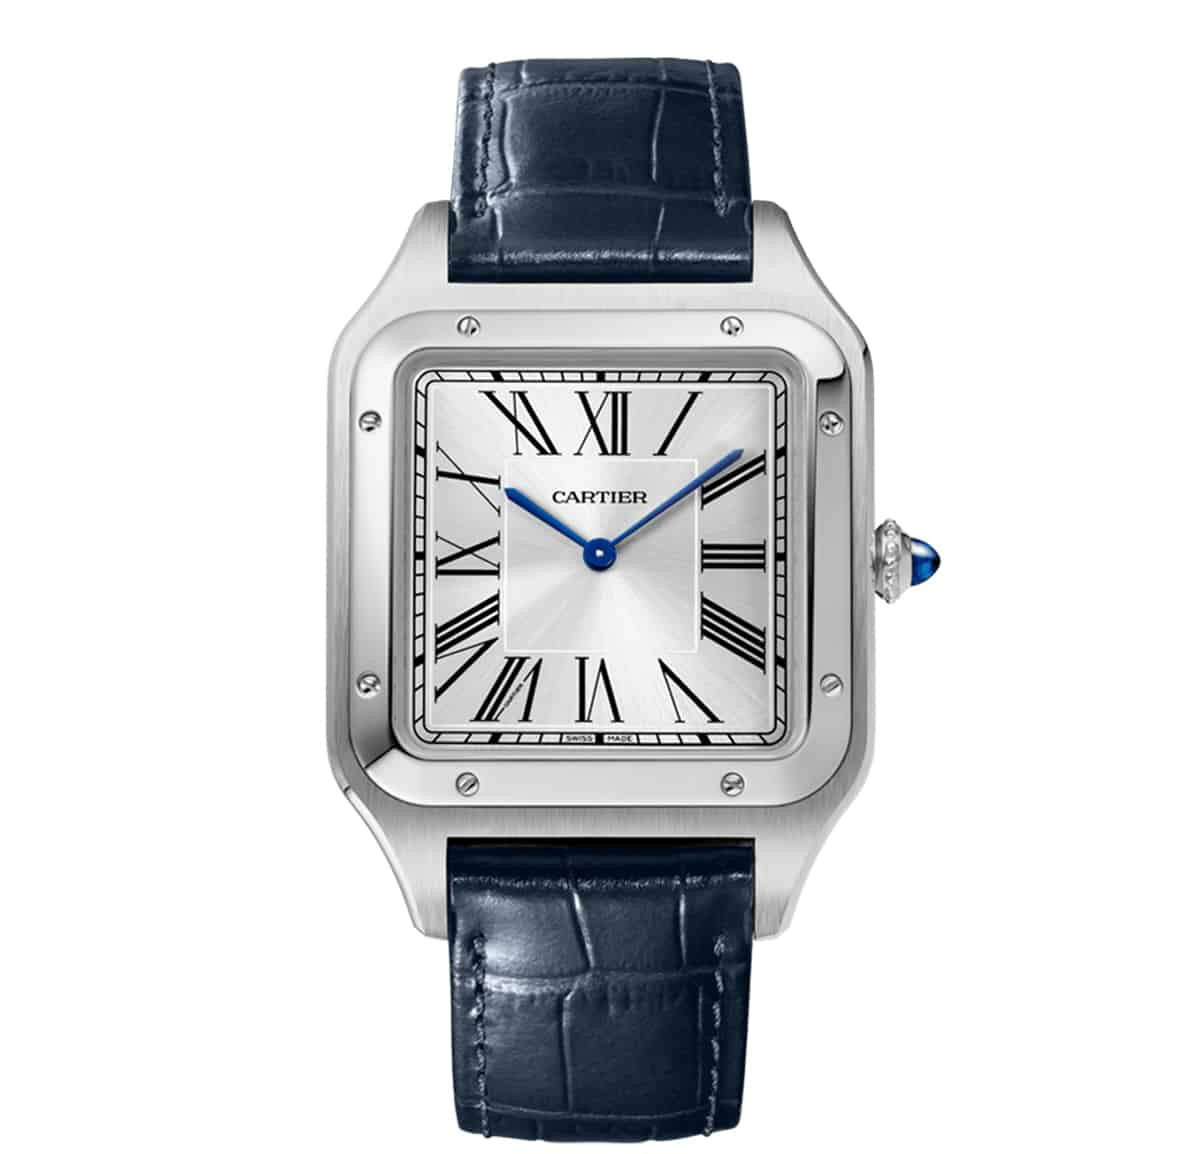 Santos-Dumont de Cartier watch